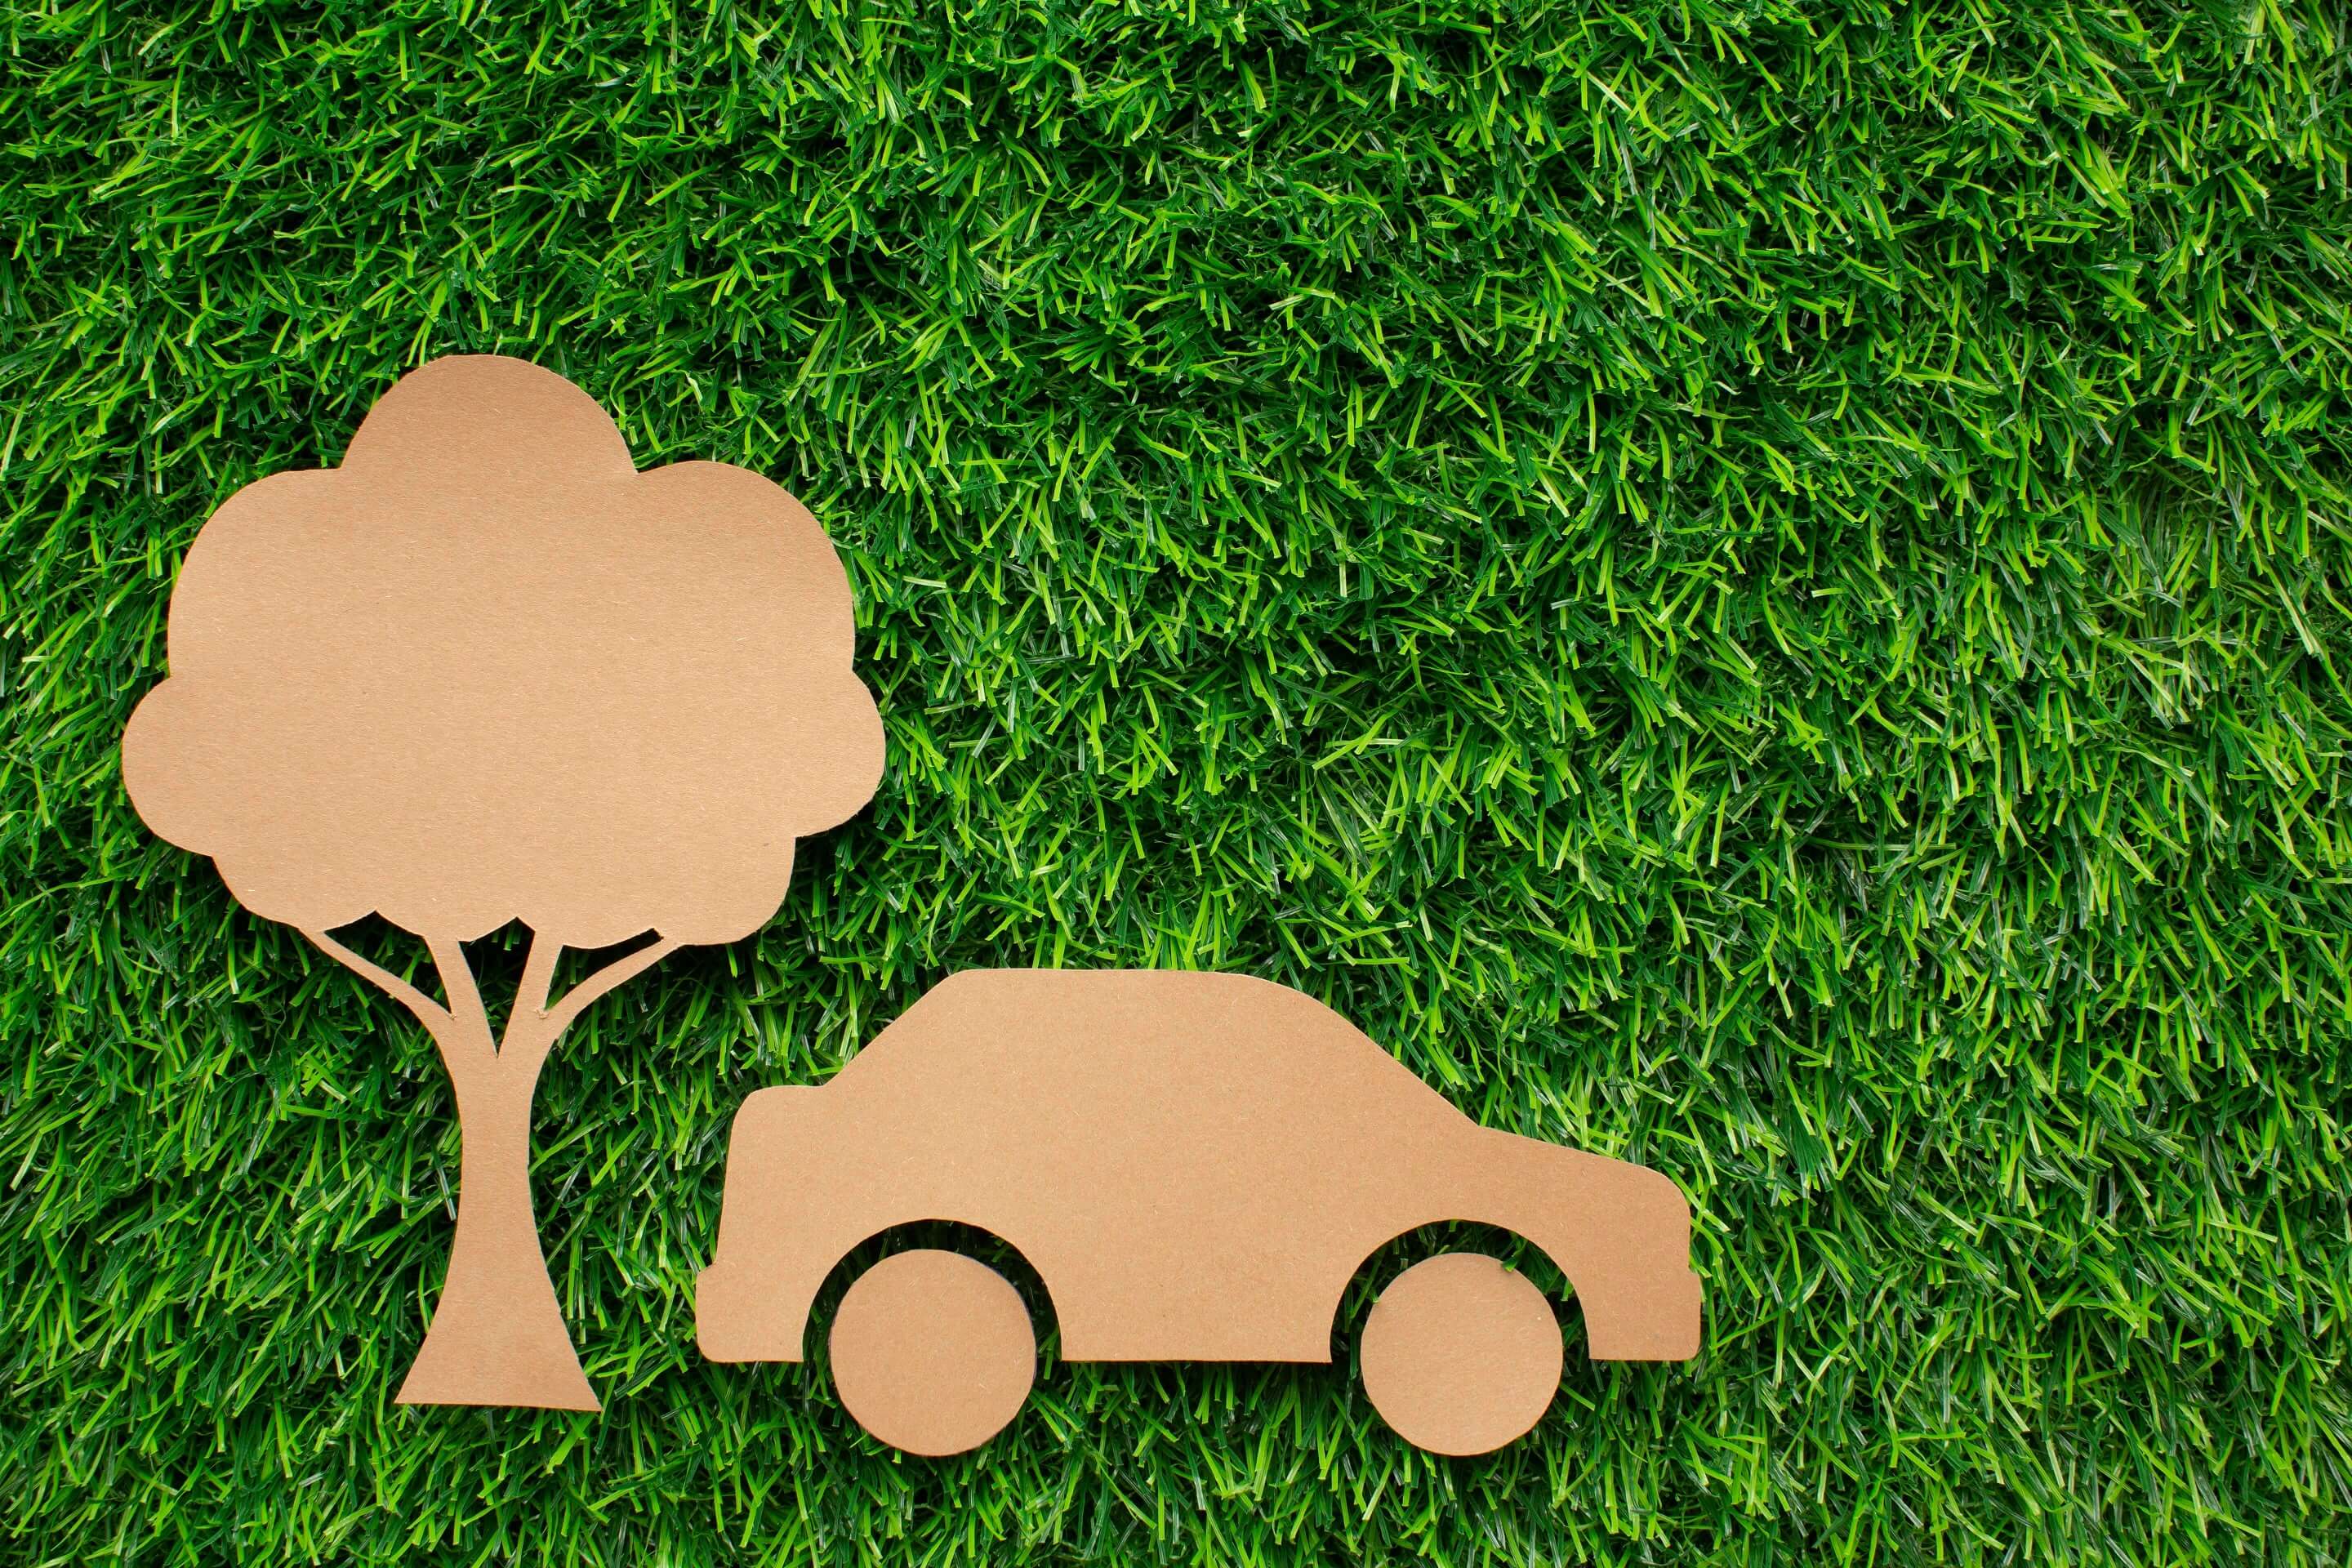  - 6 dicas para cuidar do seu carro e preservar o meio ambiente